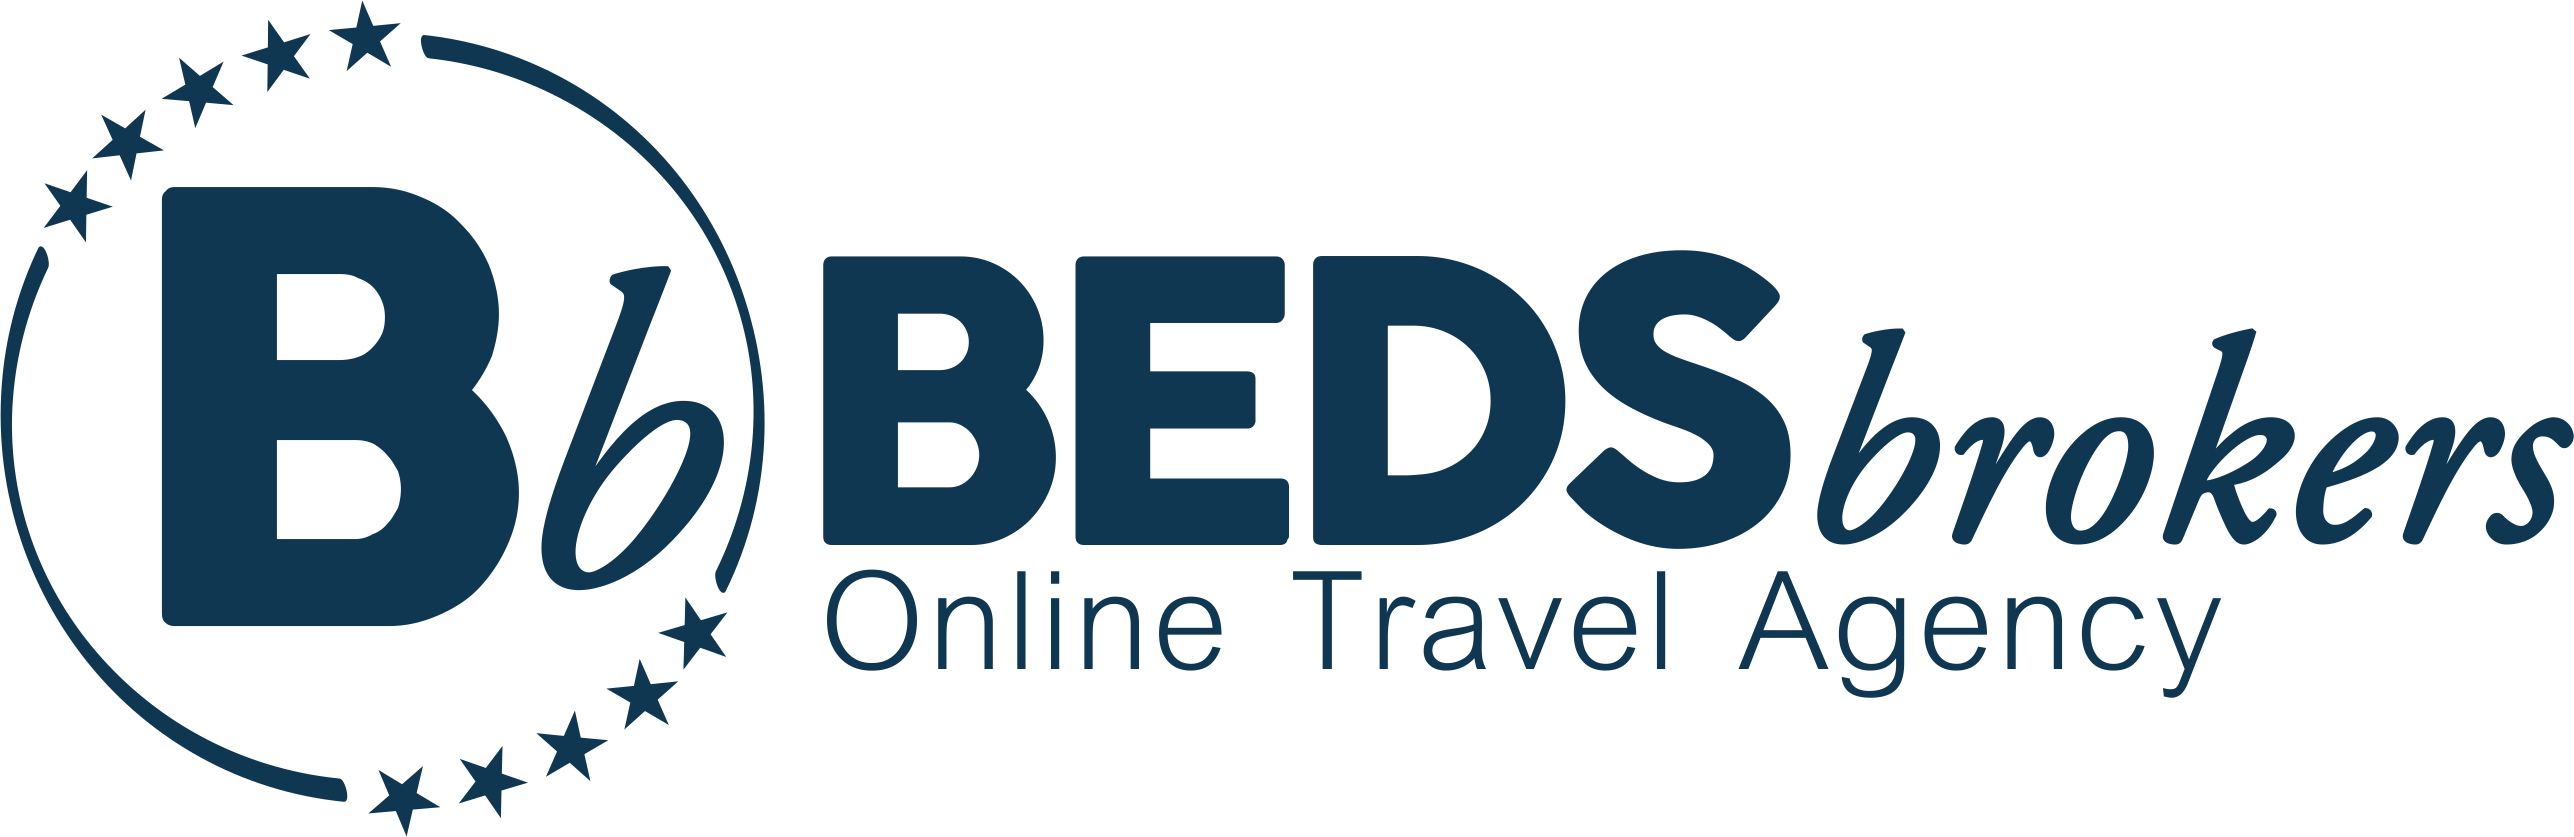 HotelAdvisor.WEBsite